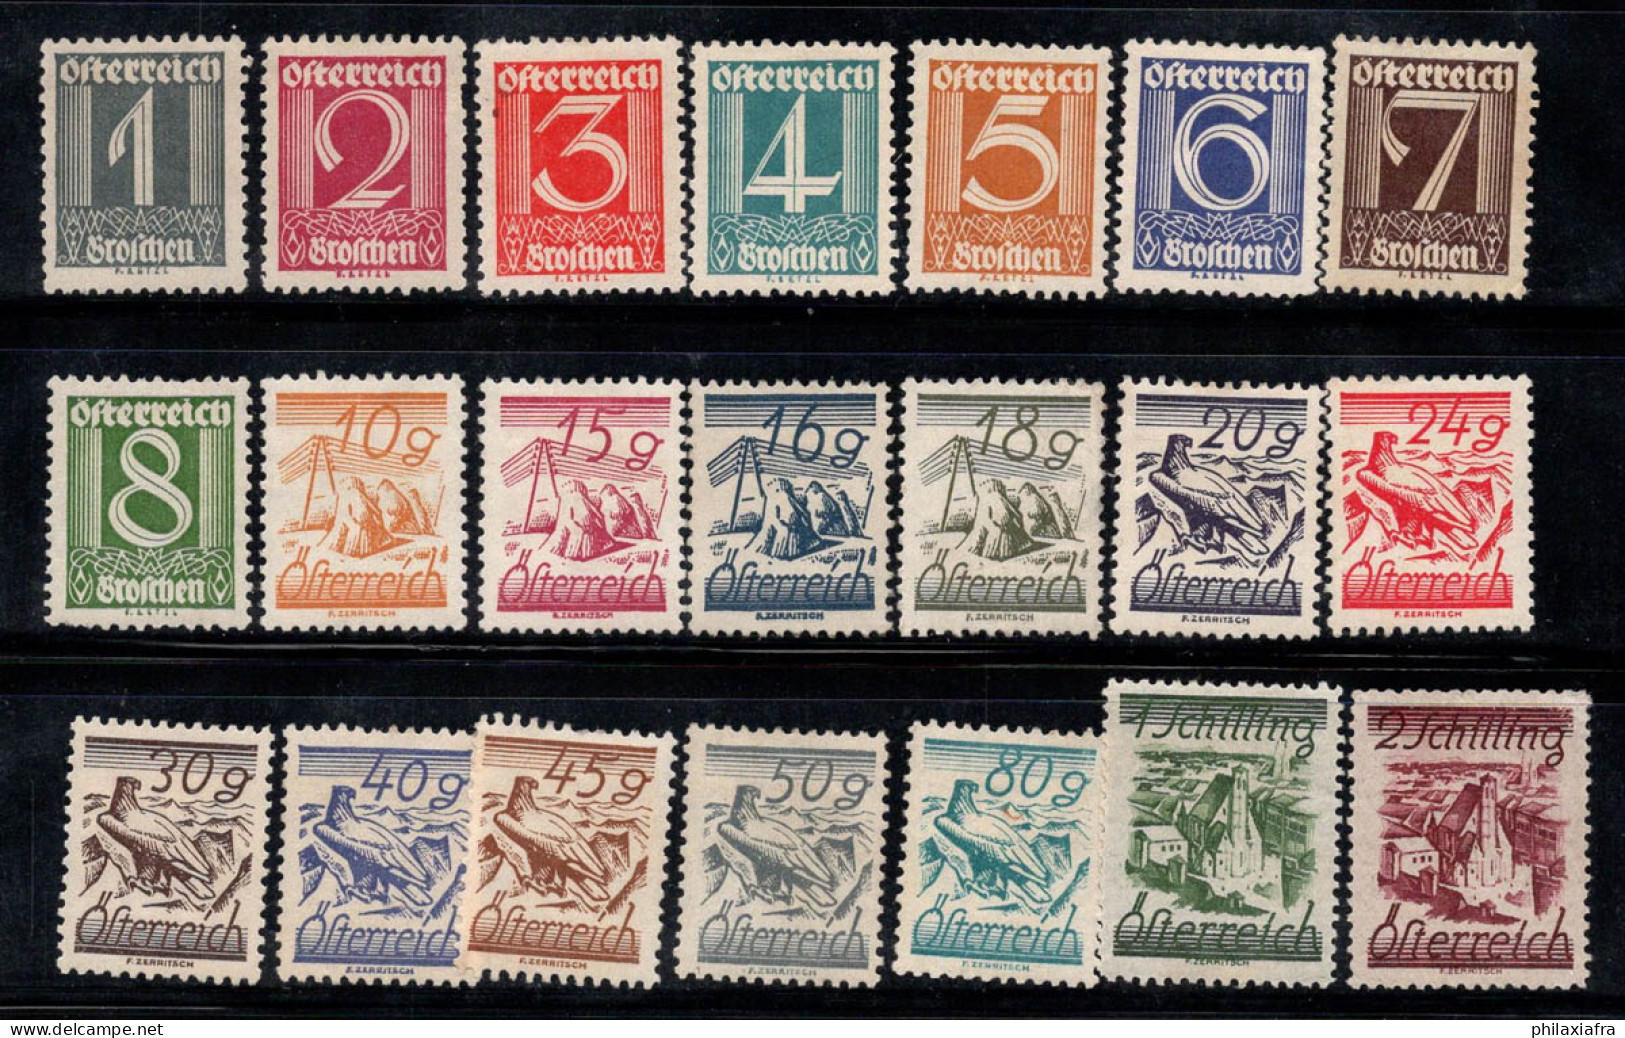 Autriche 1925 Mi. 447-467 Neuf * MH 60% Nombres, Paysages, Aigle - Neufs